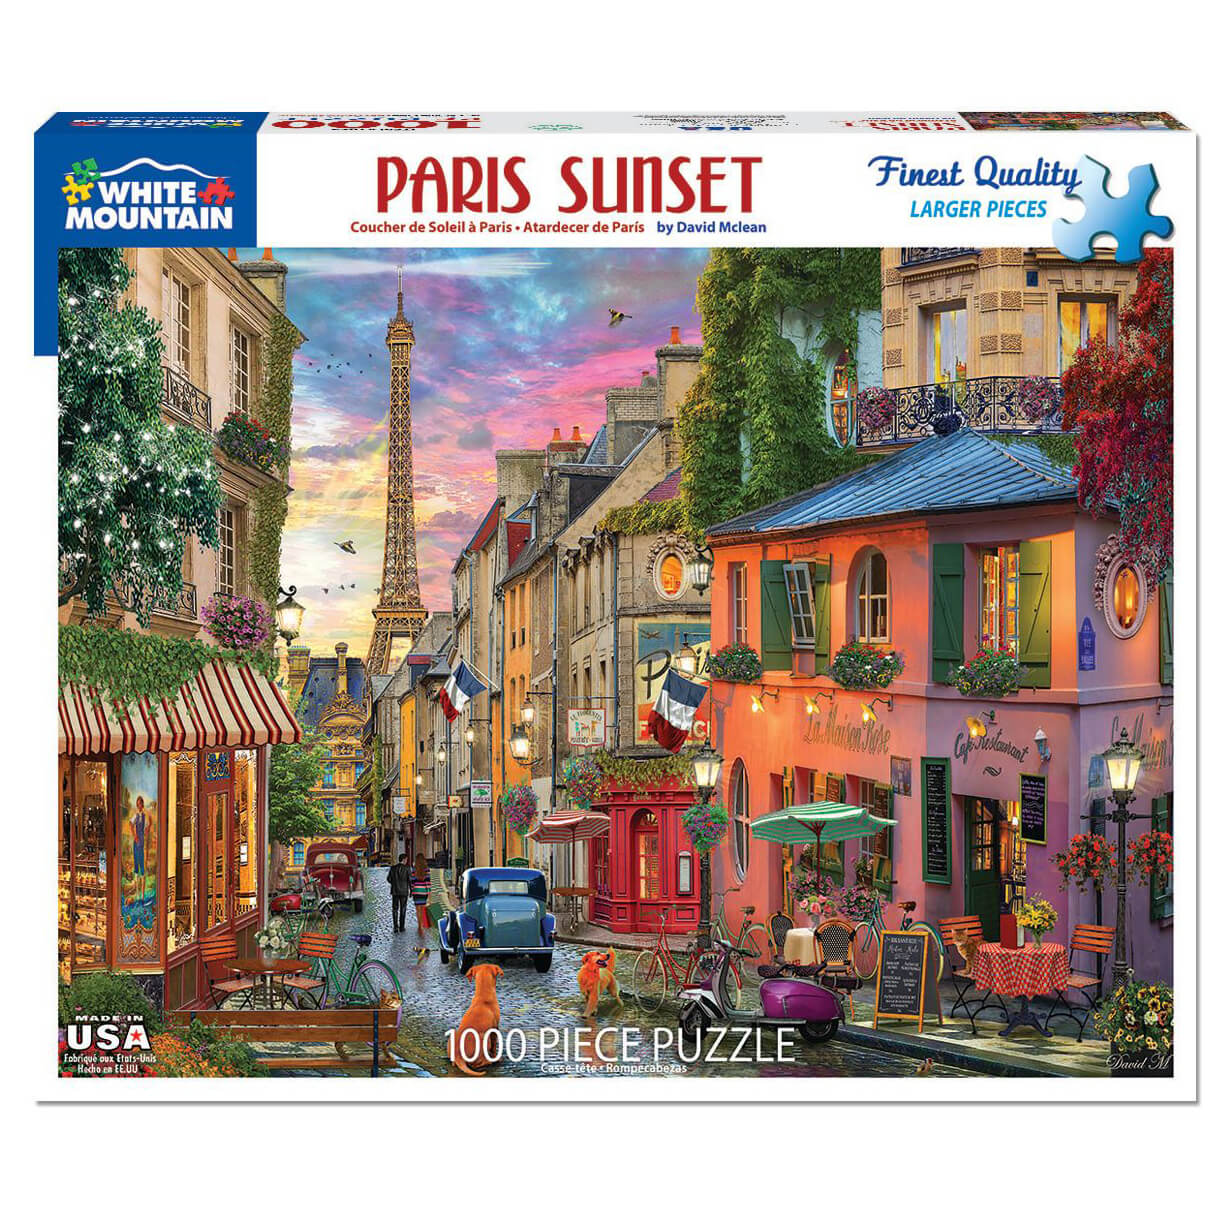 White Mountain Puzzles Paris Sunset 1000 Piece Jigsaw Puzzle